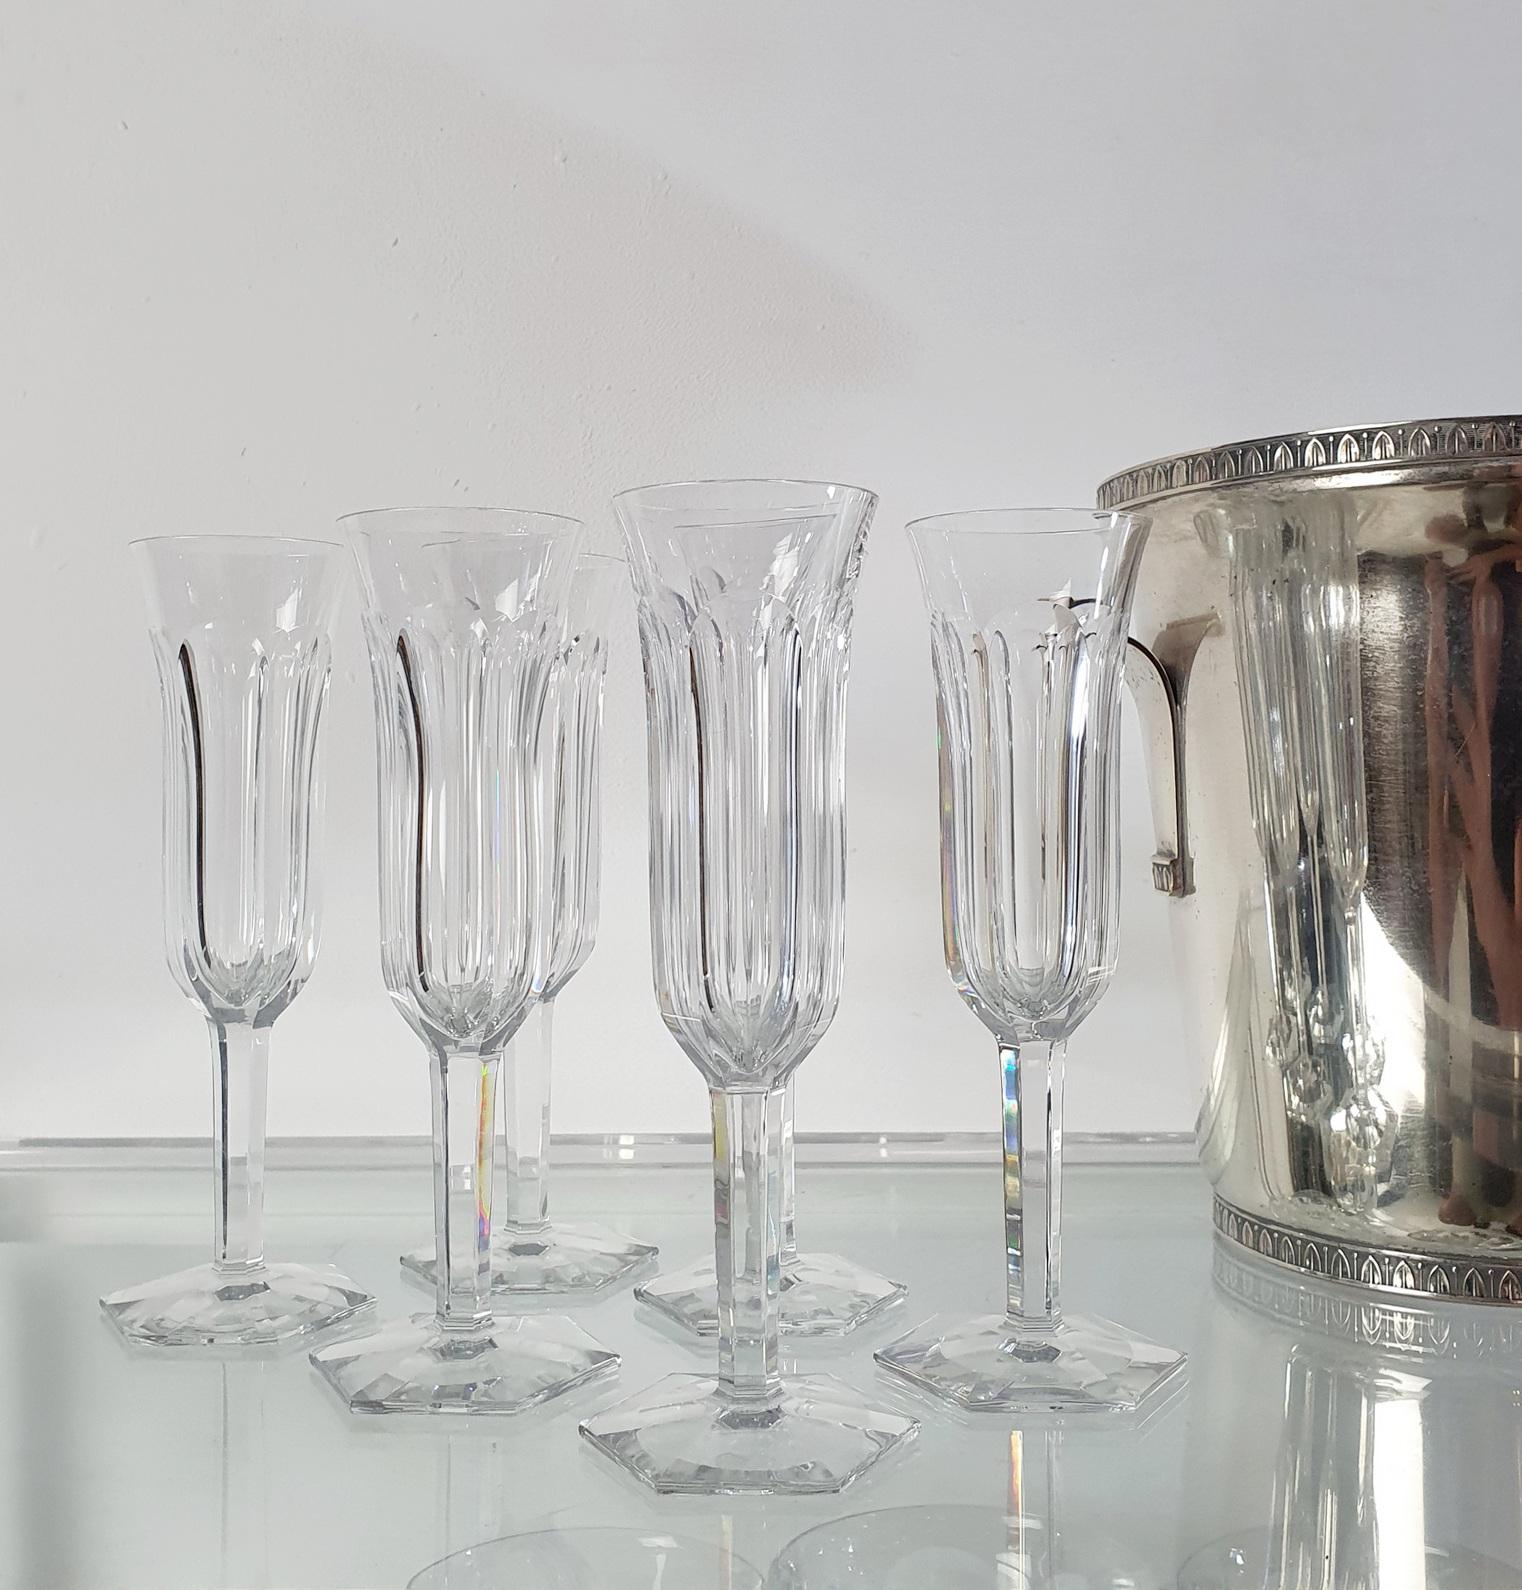 Ein wunderschönes Vintage-Set von 6/acht hohen Harcourt 1841 Champagnerflöten von Baccarat, Frankreich. Markierung Baccarat, Frankreich im Boden. Keine Absplitterungen oder Beschädigungen.

Rein, kraftvoll und elegant zugleich, auf seinem